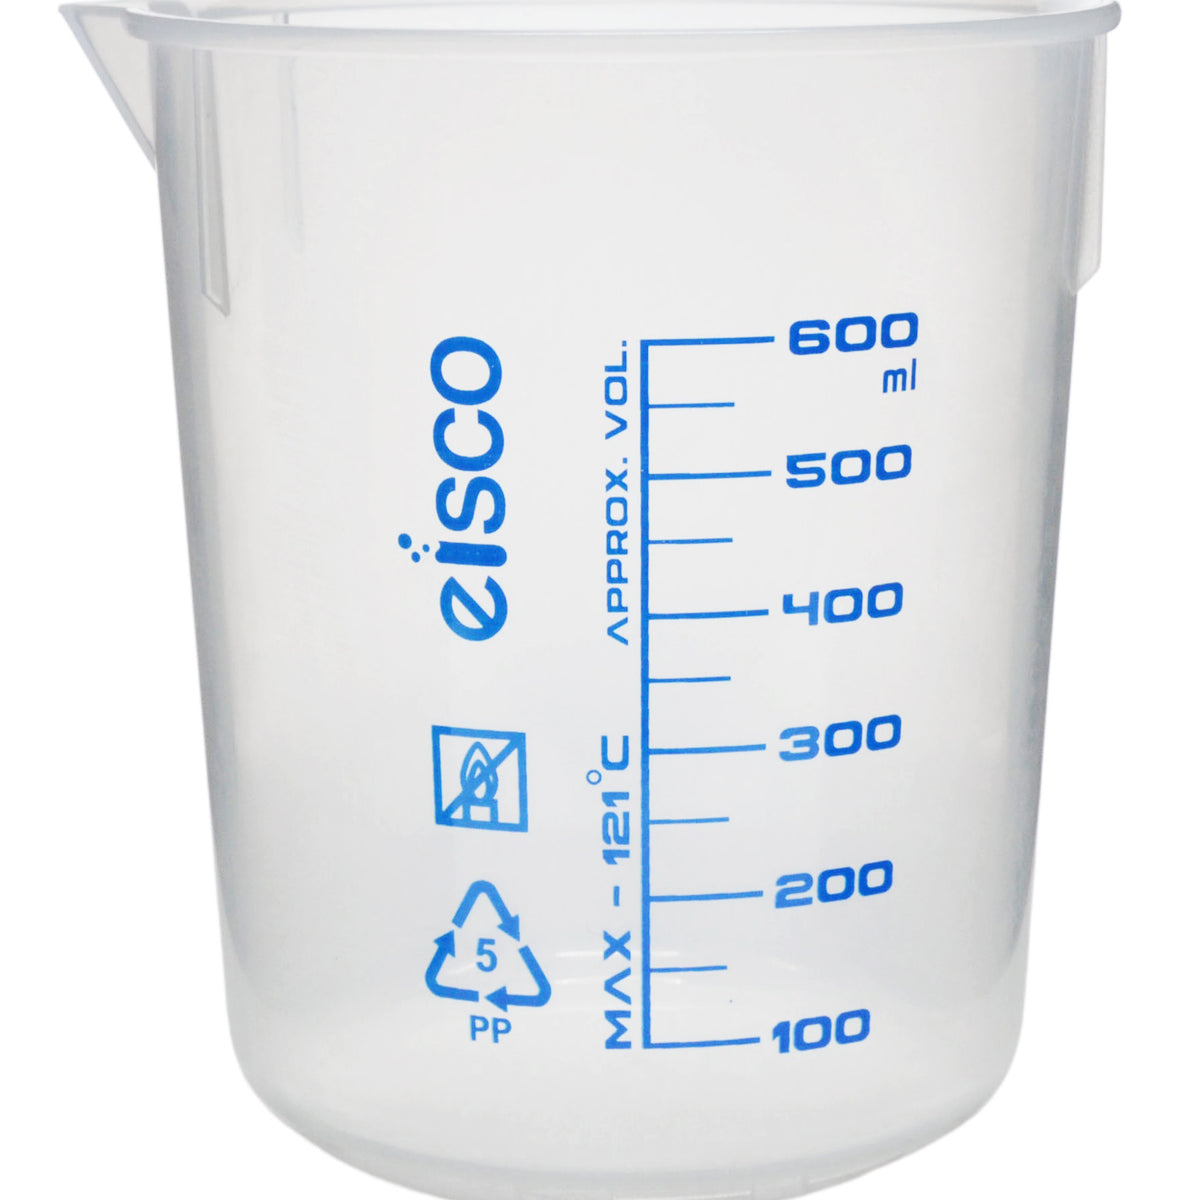 600 mL Beaker Tumbler & Water Cup